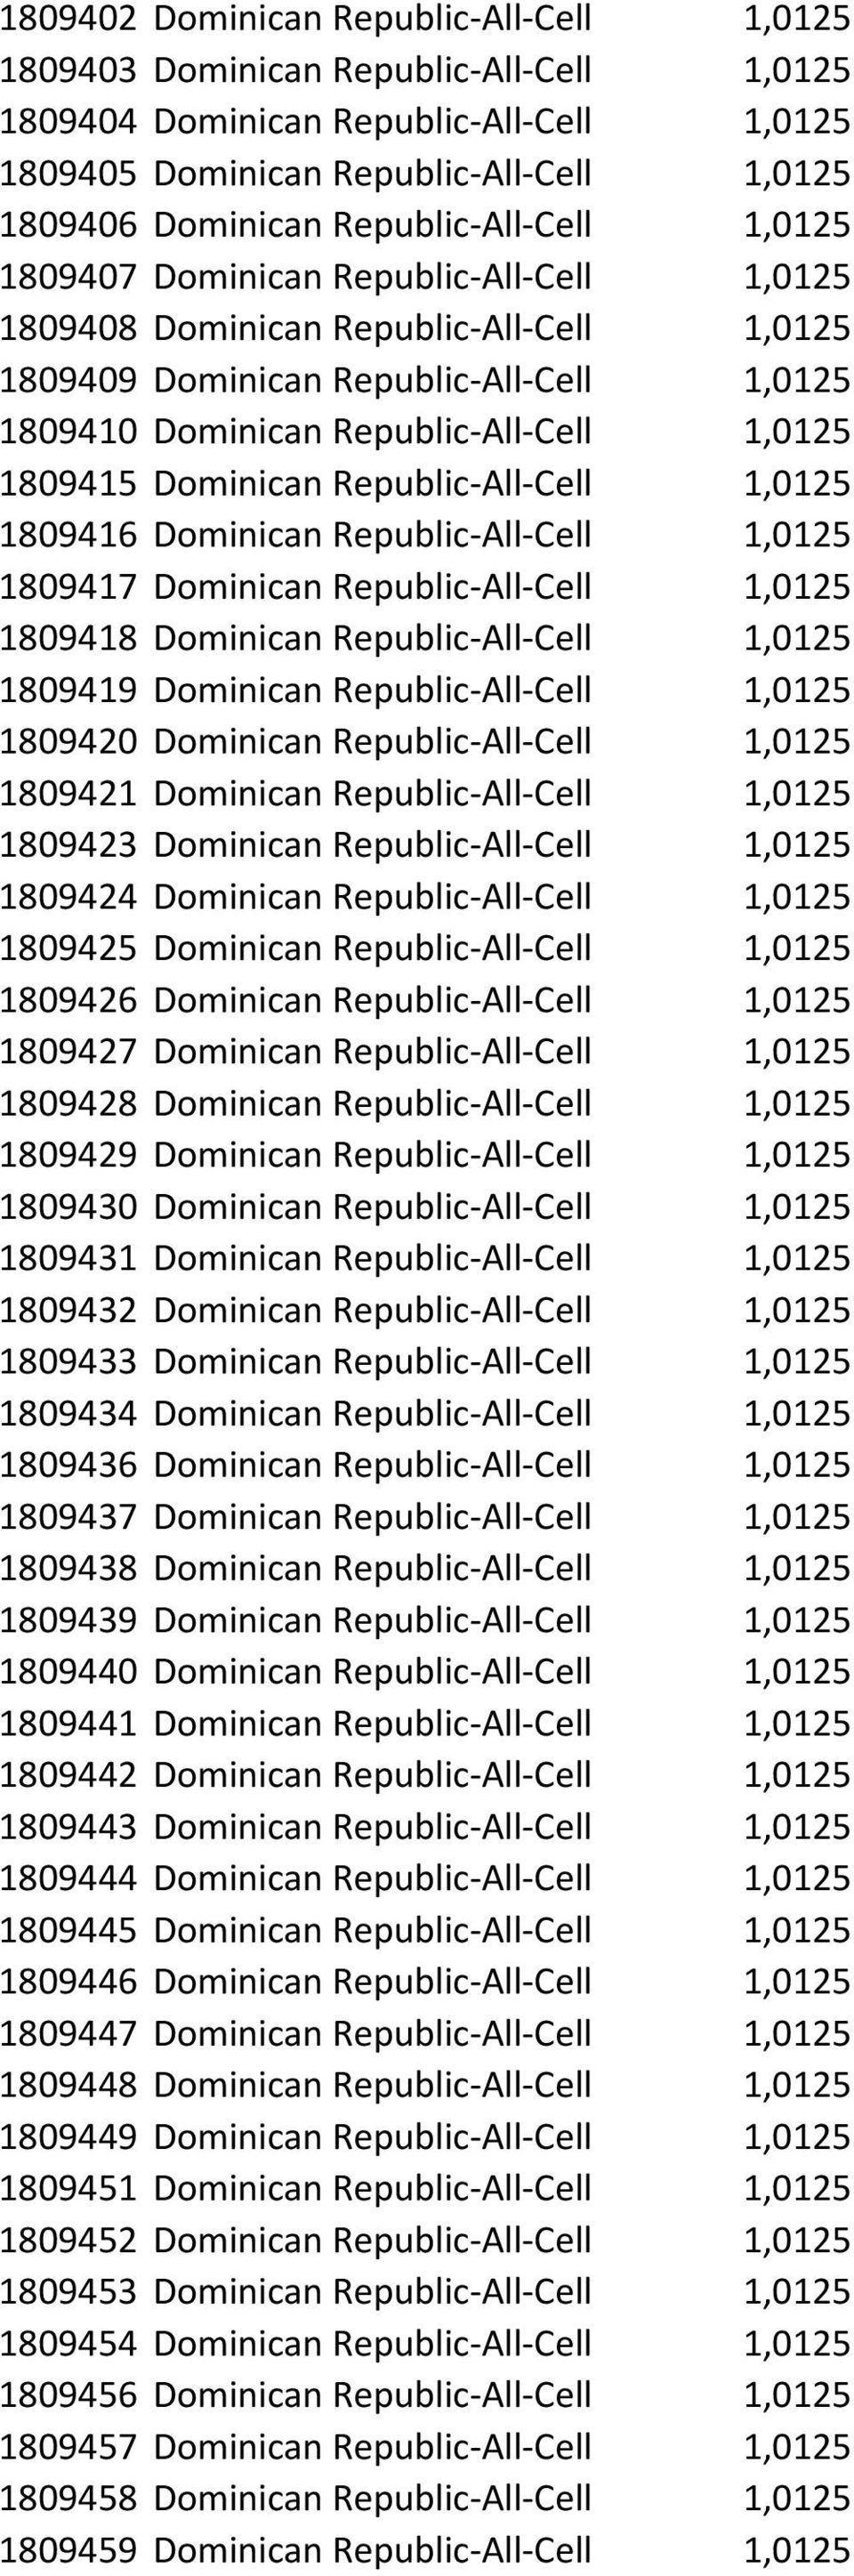 1809415 Dominican Republic-All-Cell 1,0125 1809416 Dominican Republic-All-Cell 1,0125 1809417 Dominican Republic-All-Cell 1,0125 1809418 Dominican Republic-All-Cell 1,0125 1809419 Dominican